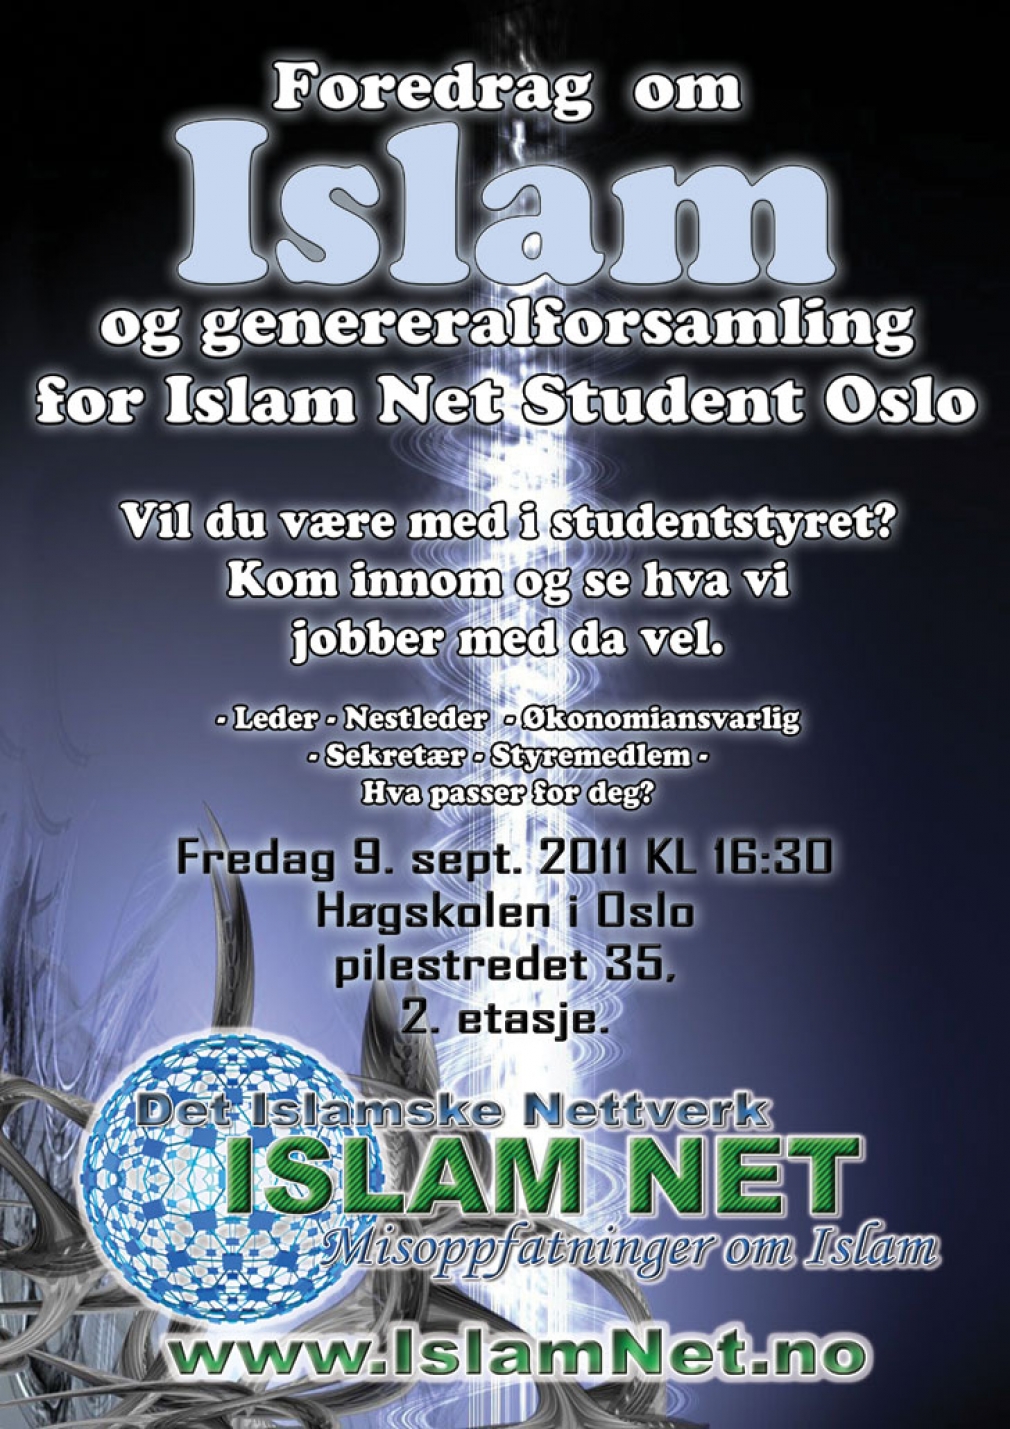 Foredrag om islam og generalforsamling for INS Oslo 2011